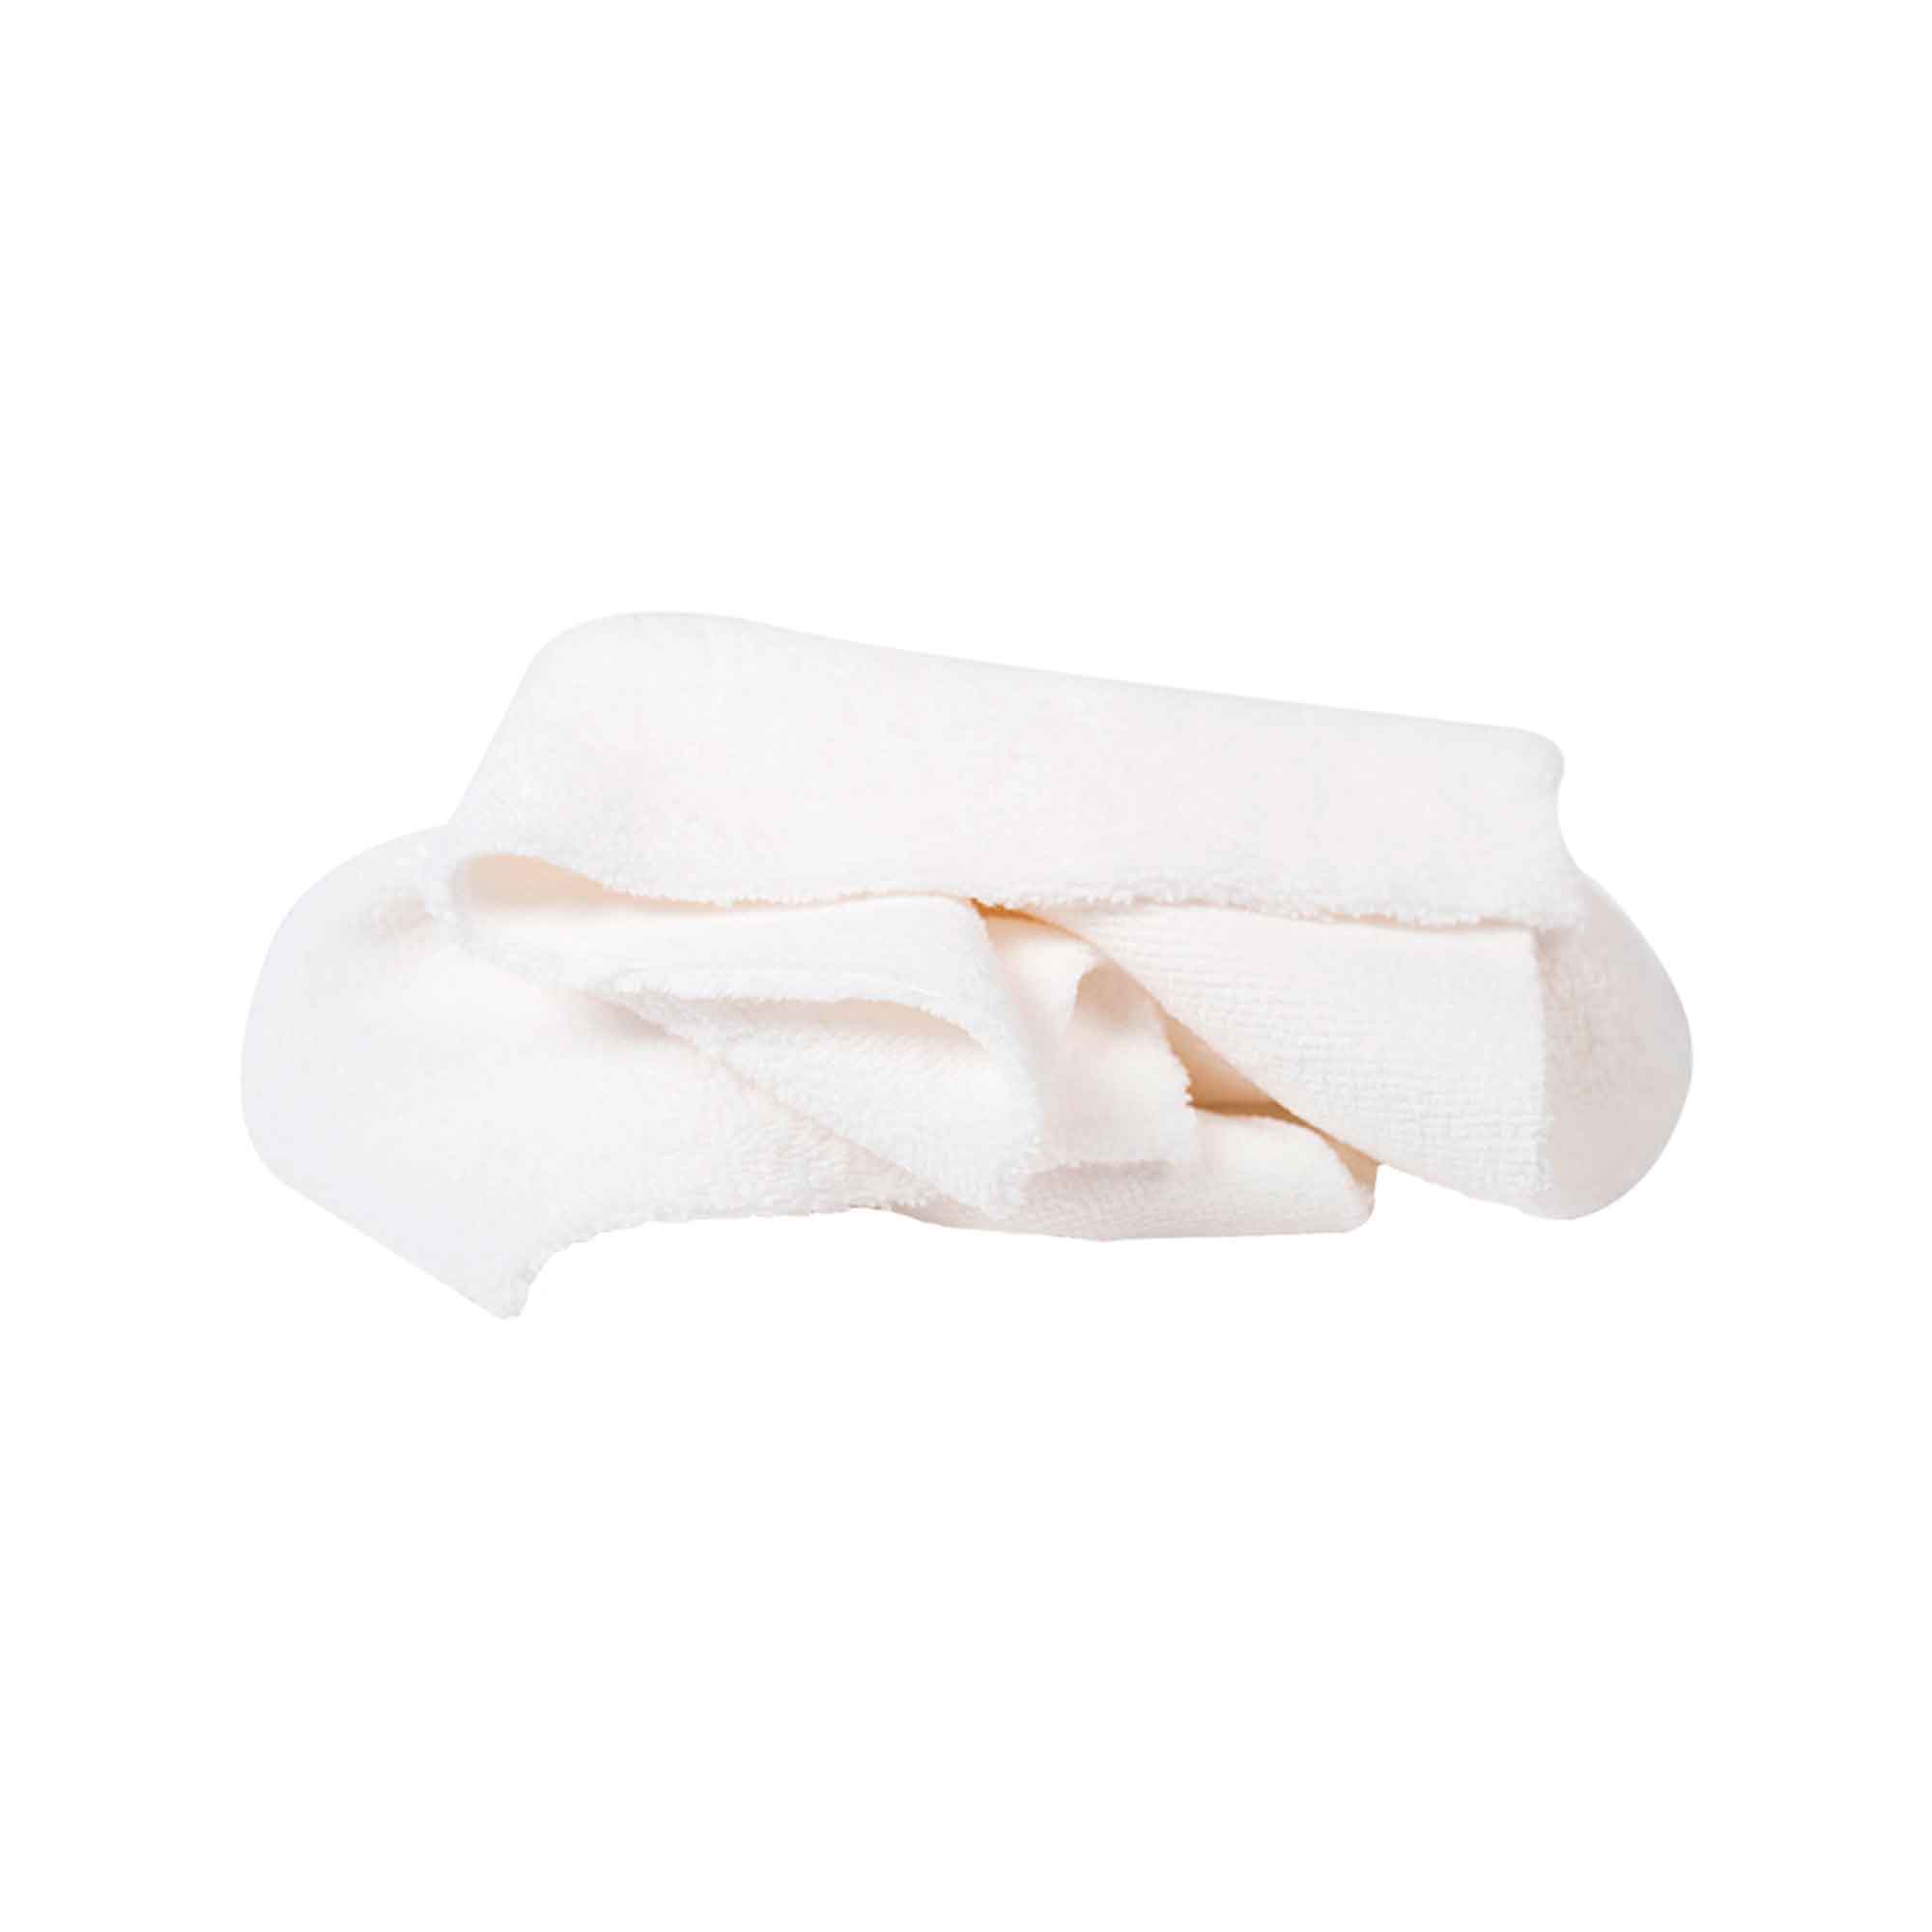 Pano Microfibra Ultra-suave Branco - Pack 5 UN